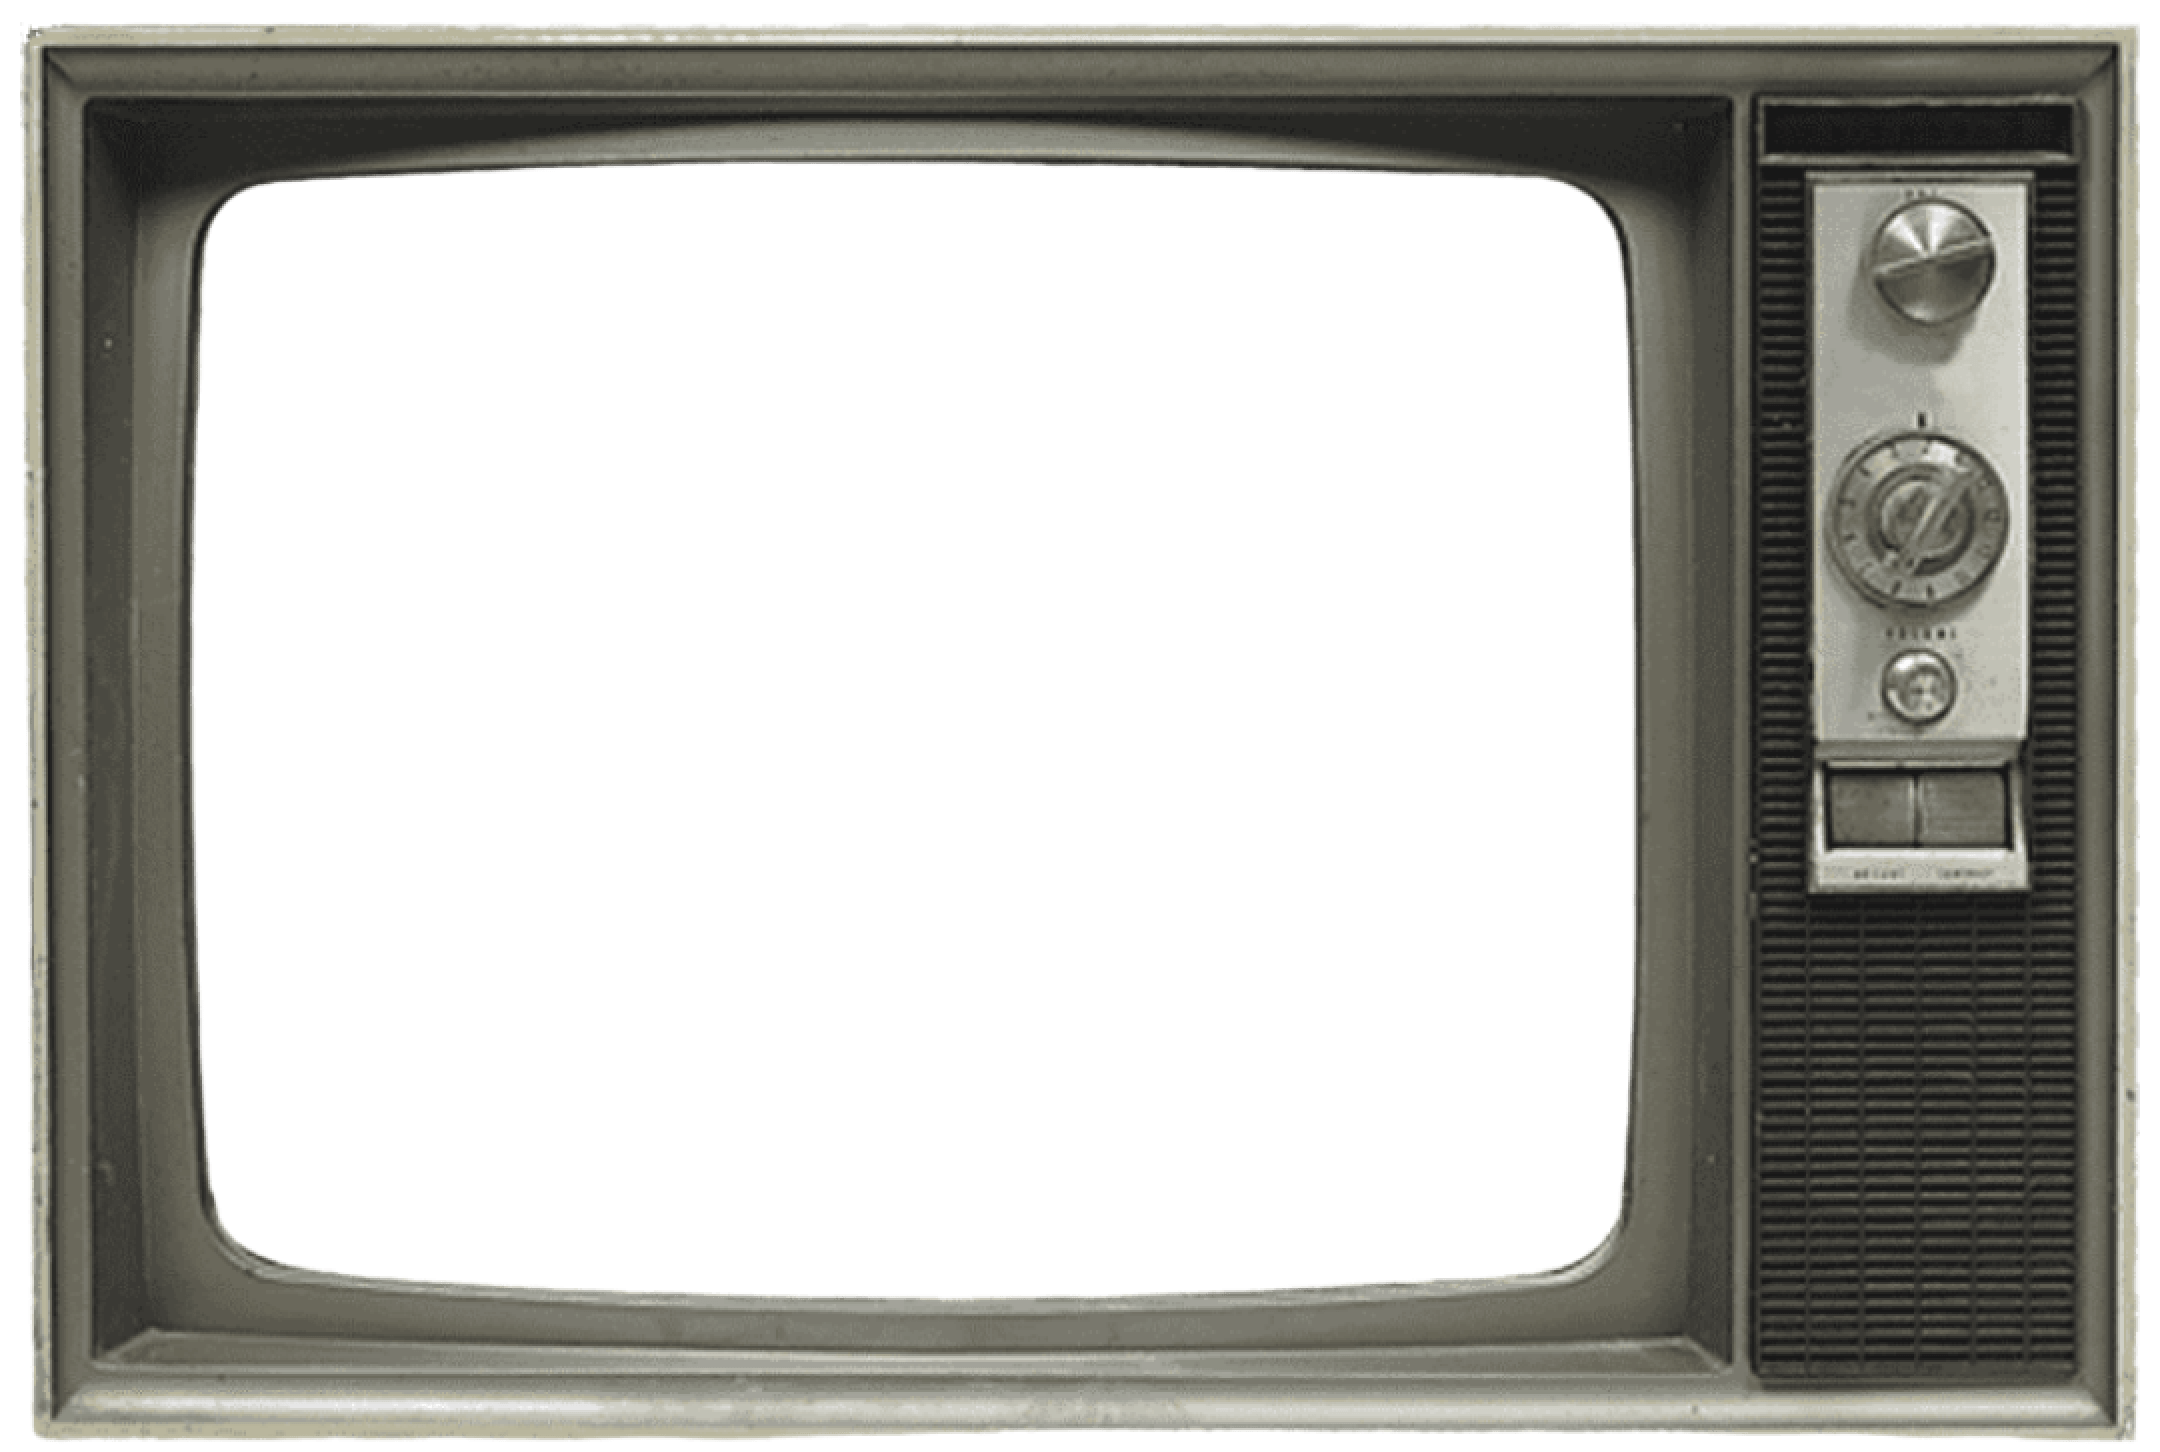 Старый телевизор фото для фотошопа